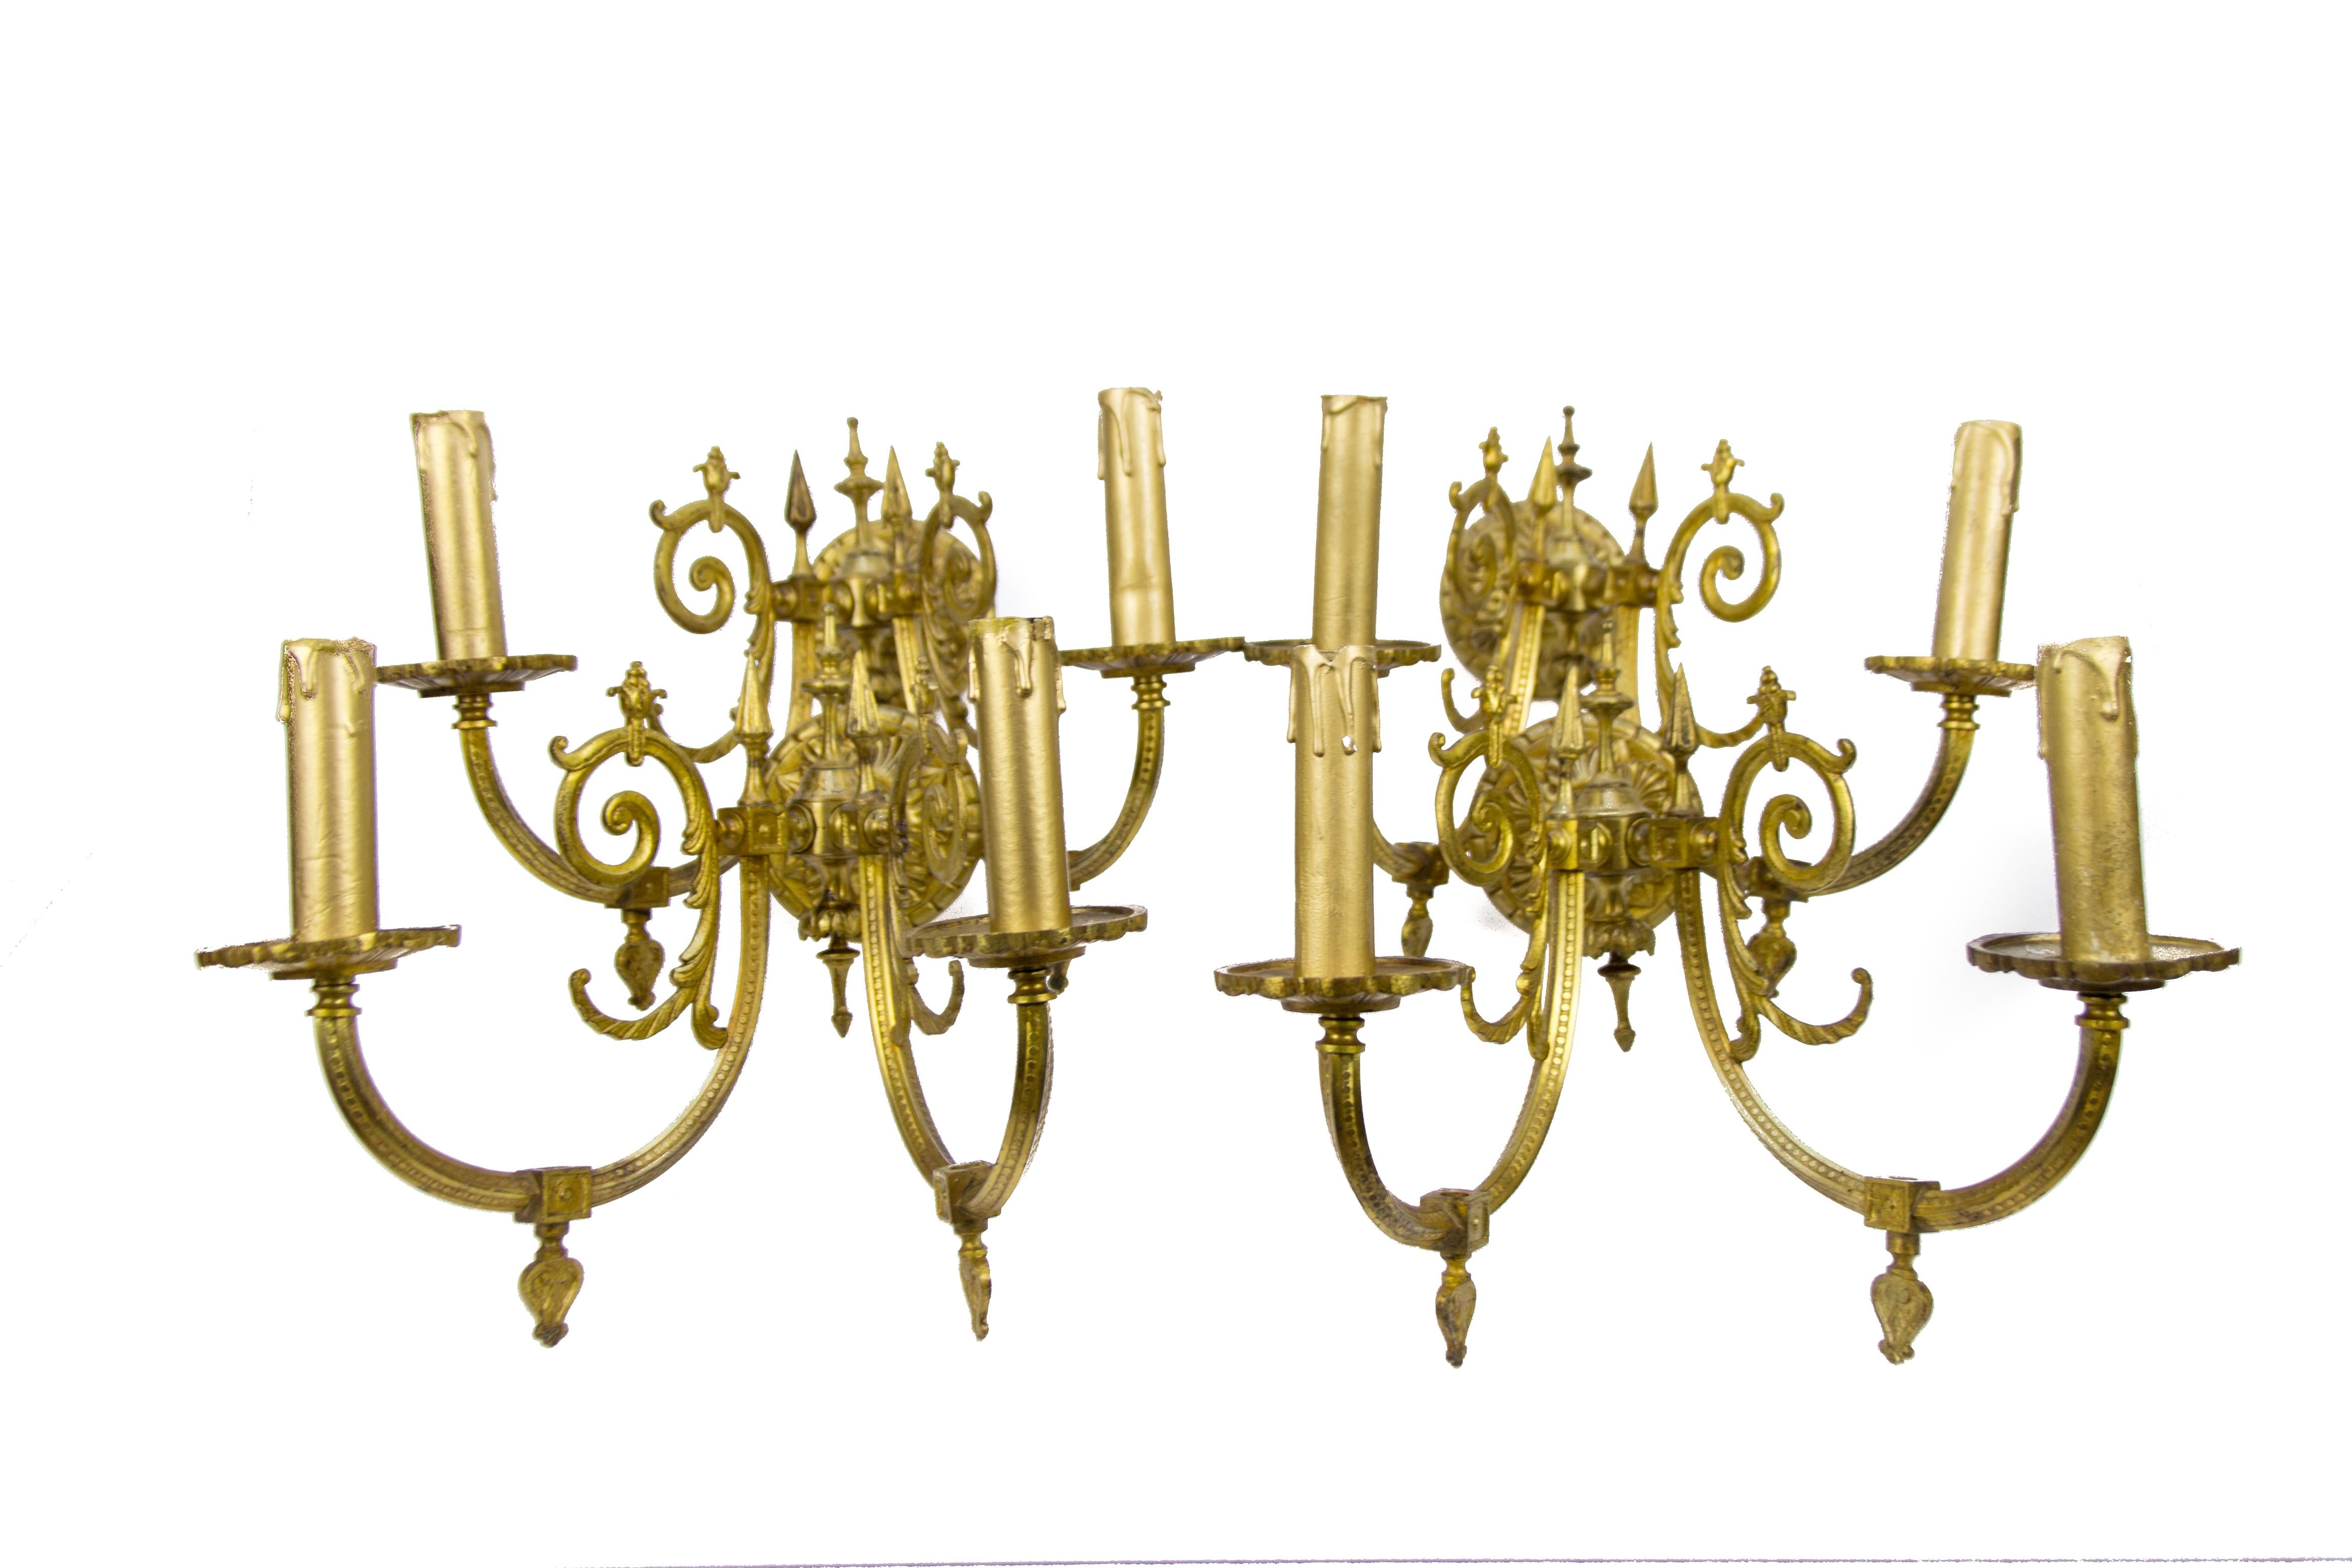 Satz von vier bronzefarbenen Wandleuchtern im viktorianischen Stil, die mit Gas betrieben werden und aus dem späten 19. Jahrhundert stammen. Jede Leuchte hat zwei Arme aus Bronze und jeder Arm hat eine Fassung für eine Glühbirne der Größe E 14.